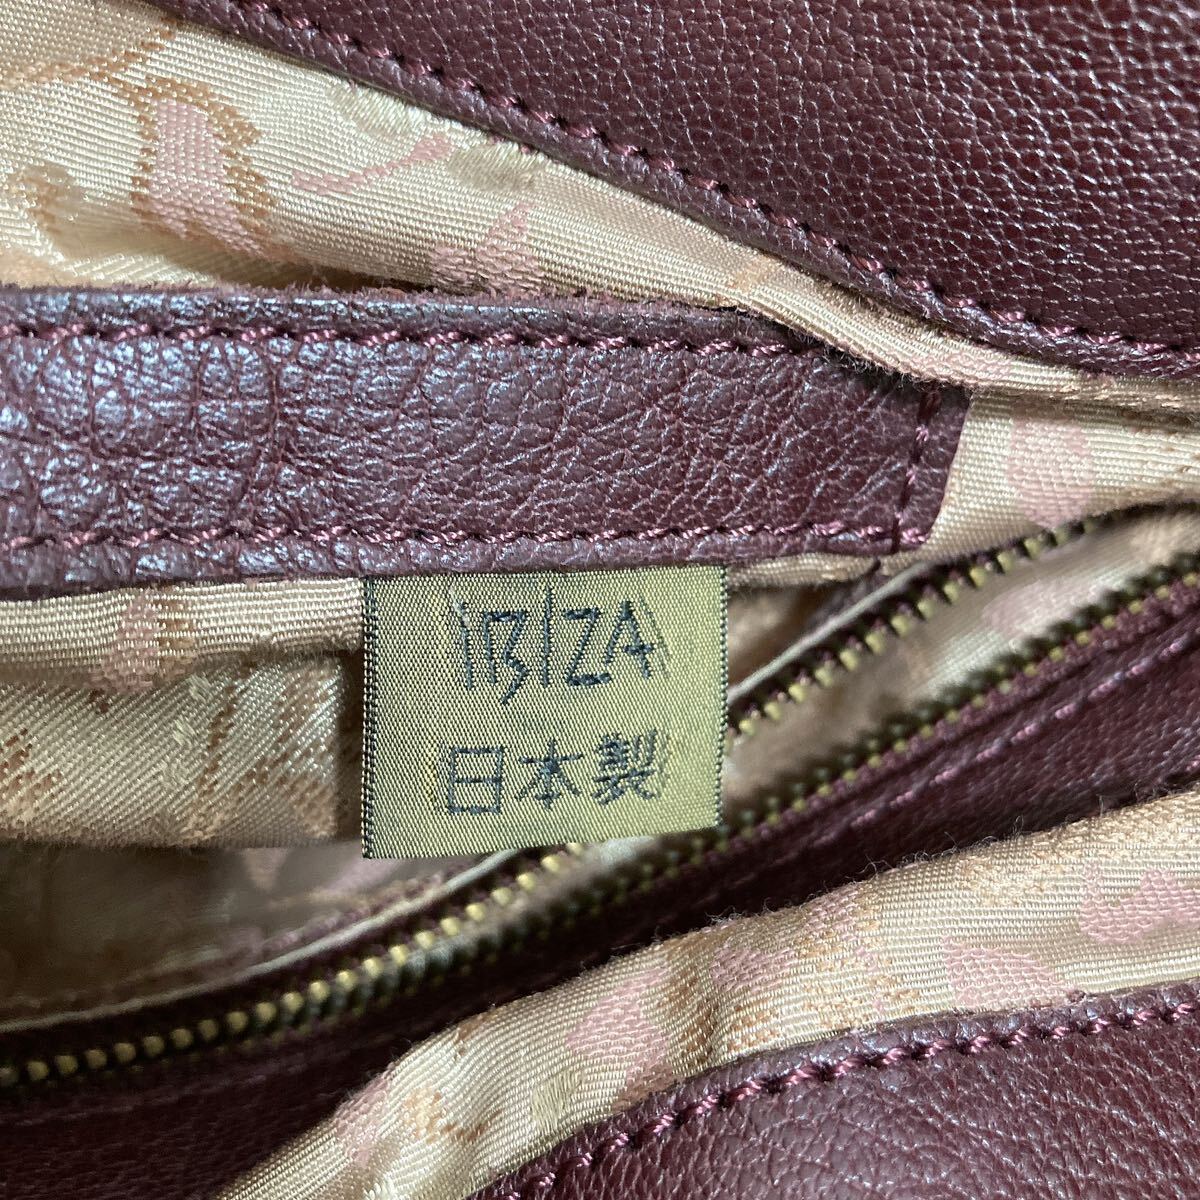 IBIZA イビザ レディース メンズ ワンショルダーバッグ トートバッグ かごバッグ 編み込み 牛革 レザー ワインレッド 高級 日本 ブランド